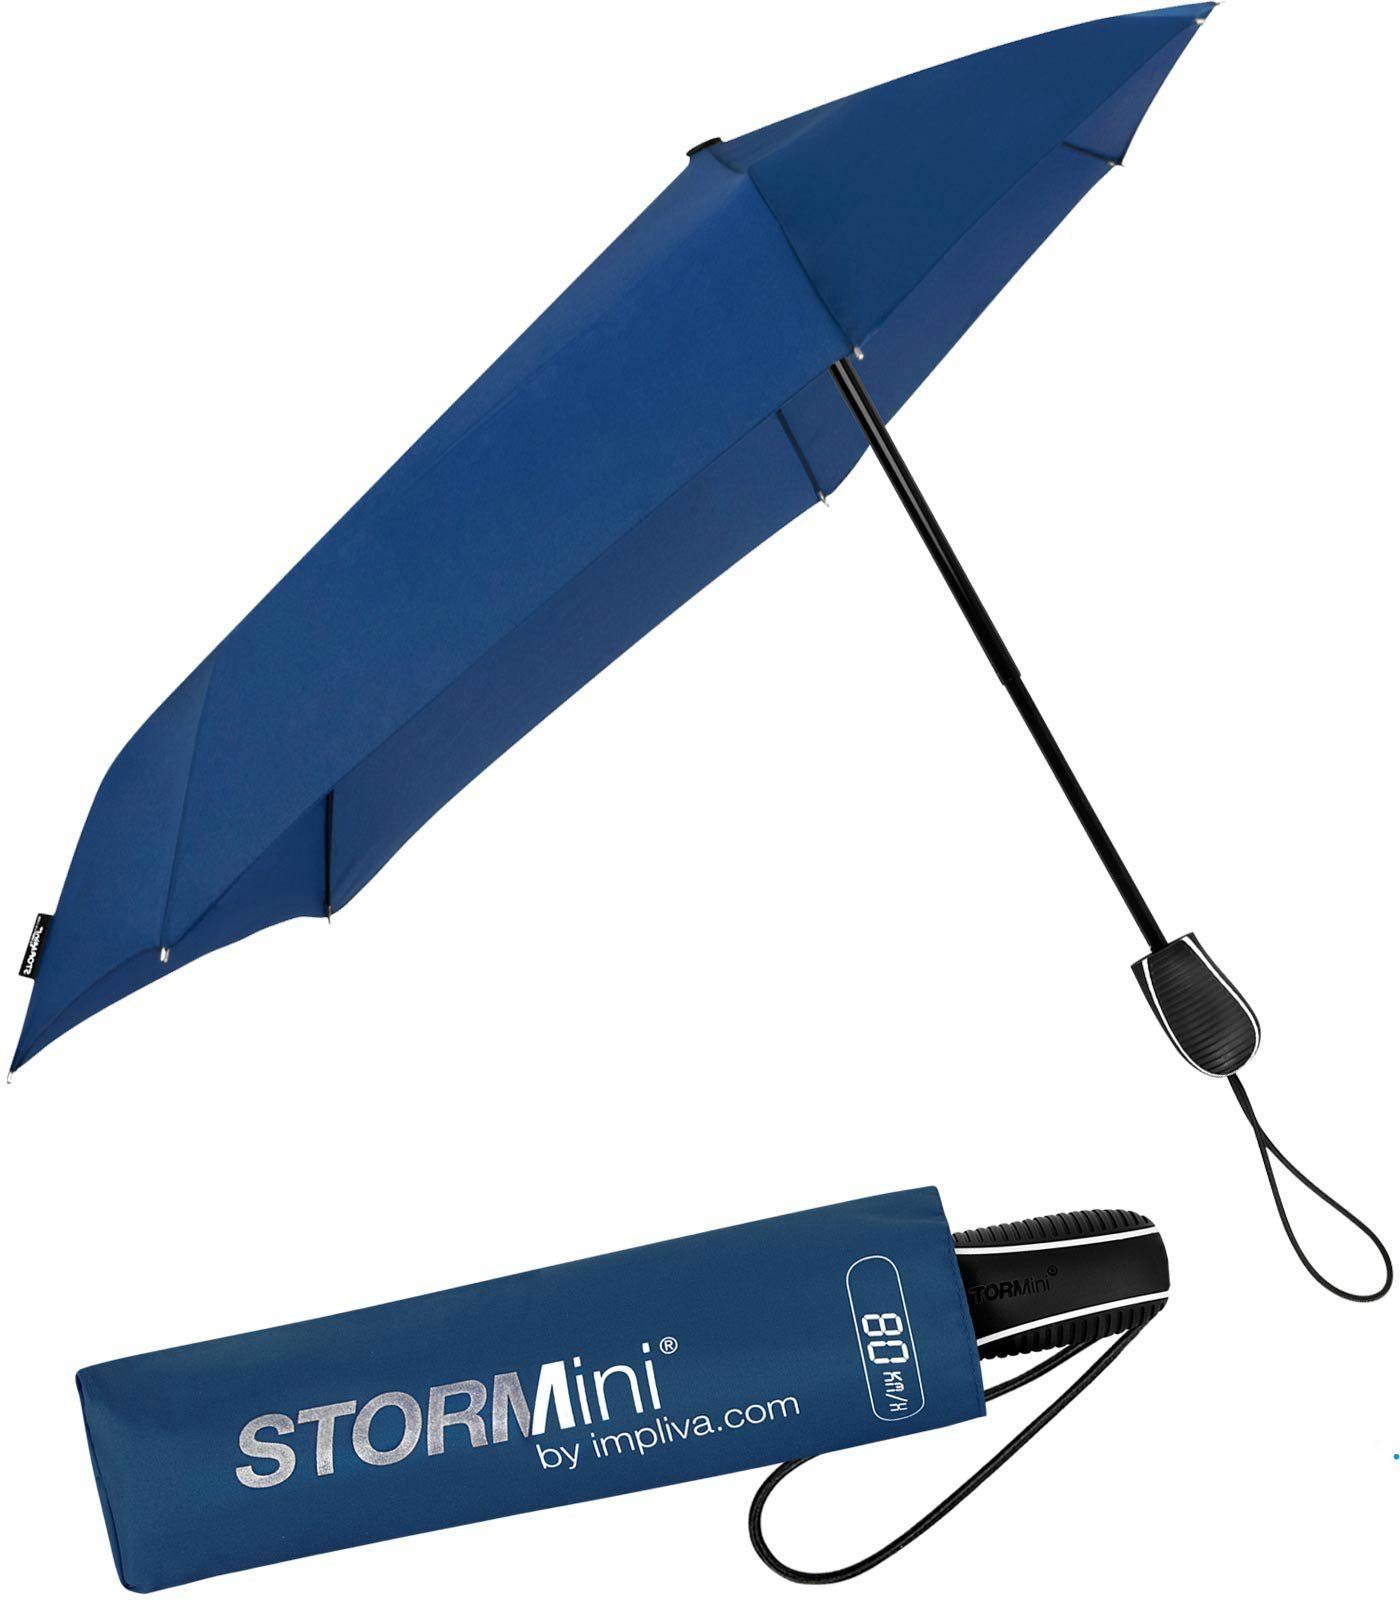 Impliva Taschenregenschirm STORMini aerodynamischer Sturmschirm, durch seine besondere Form dreht sich der Schirm in den Wind, hält bis zu 80 km/h aus navy